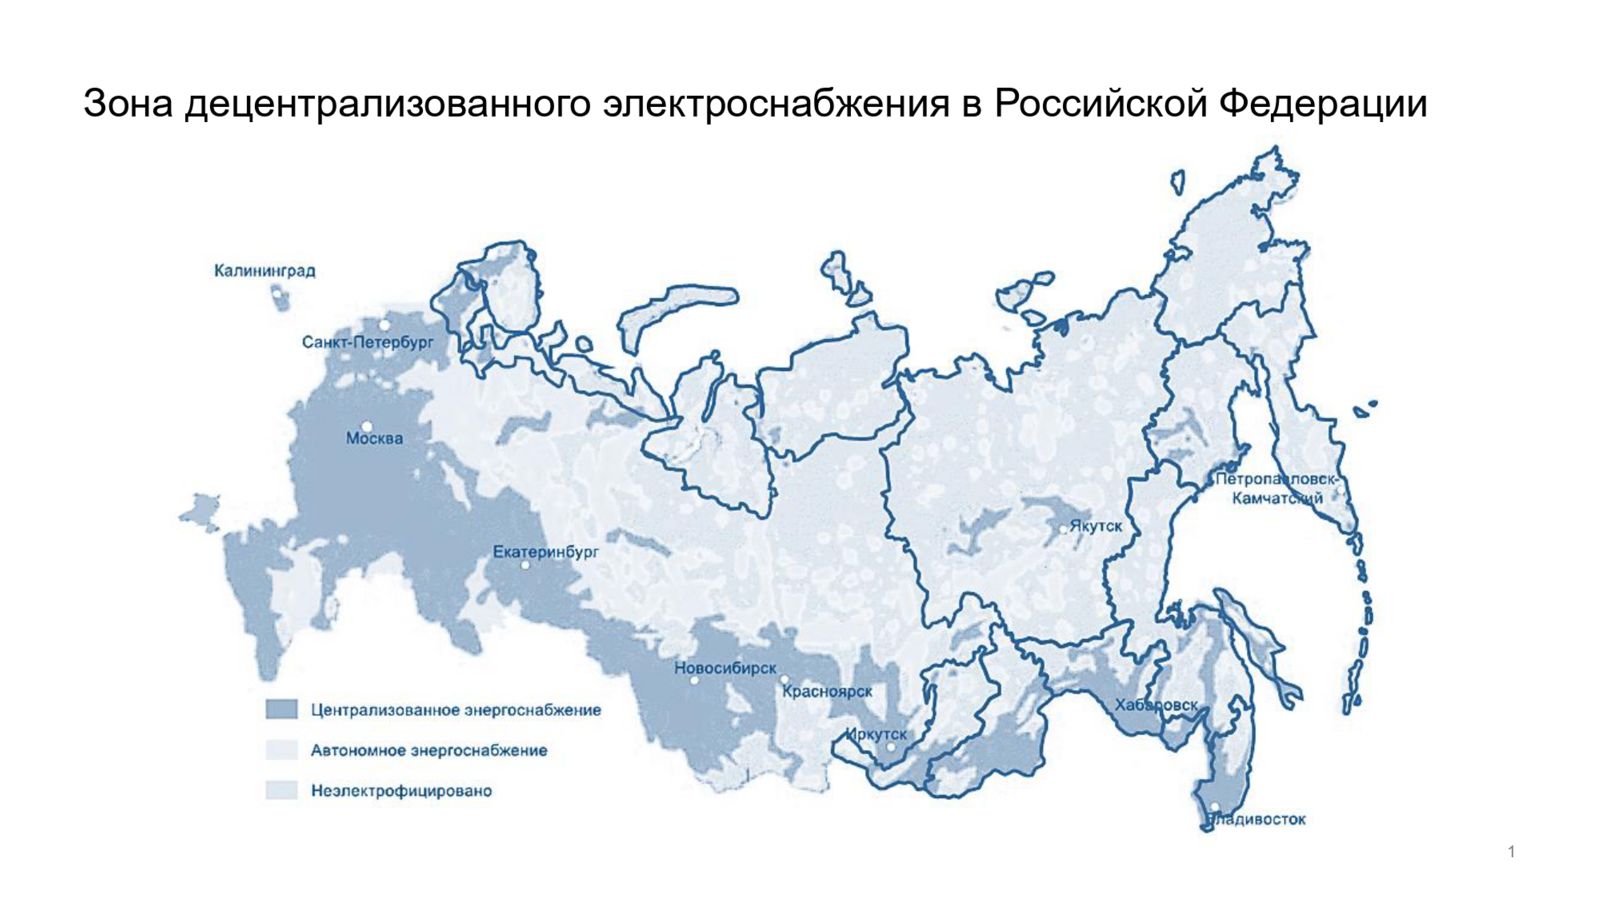 Рисунок 2. Зона децентрализованного электроснабжения в Российской Федерации